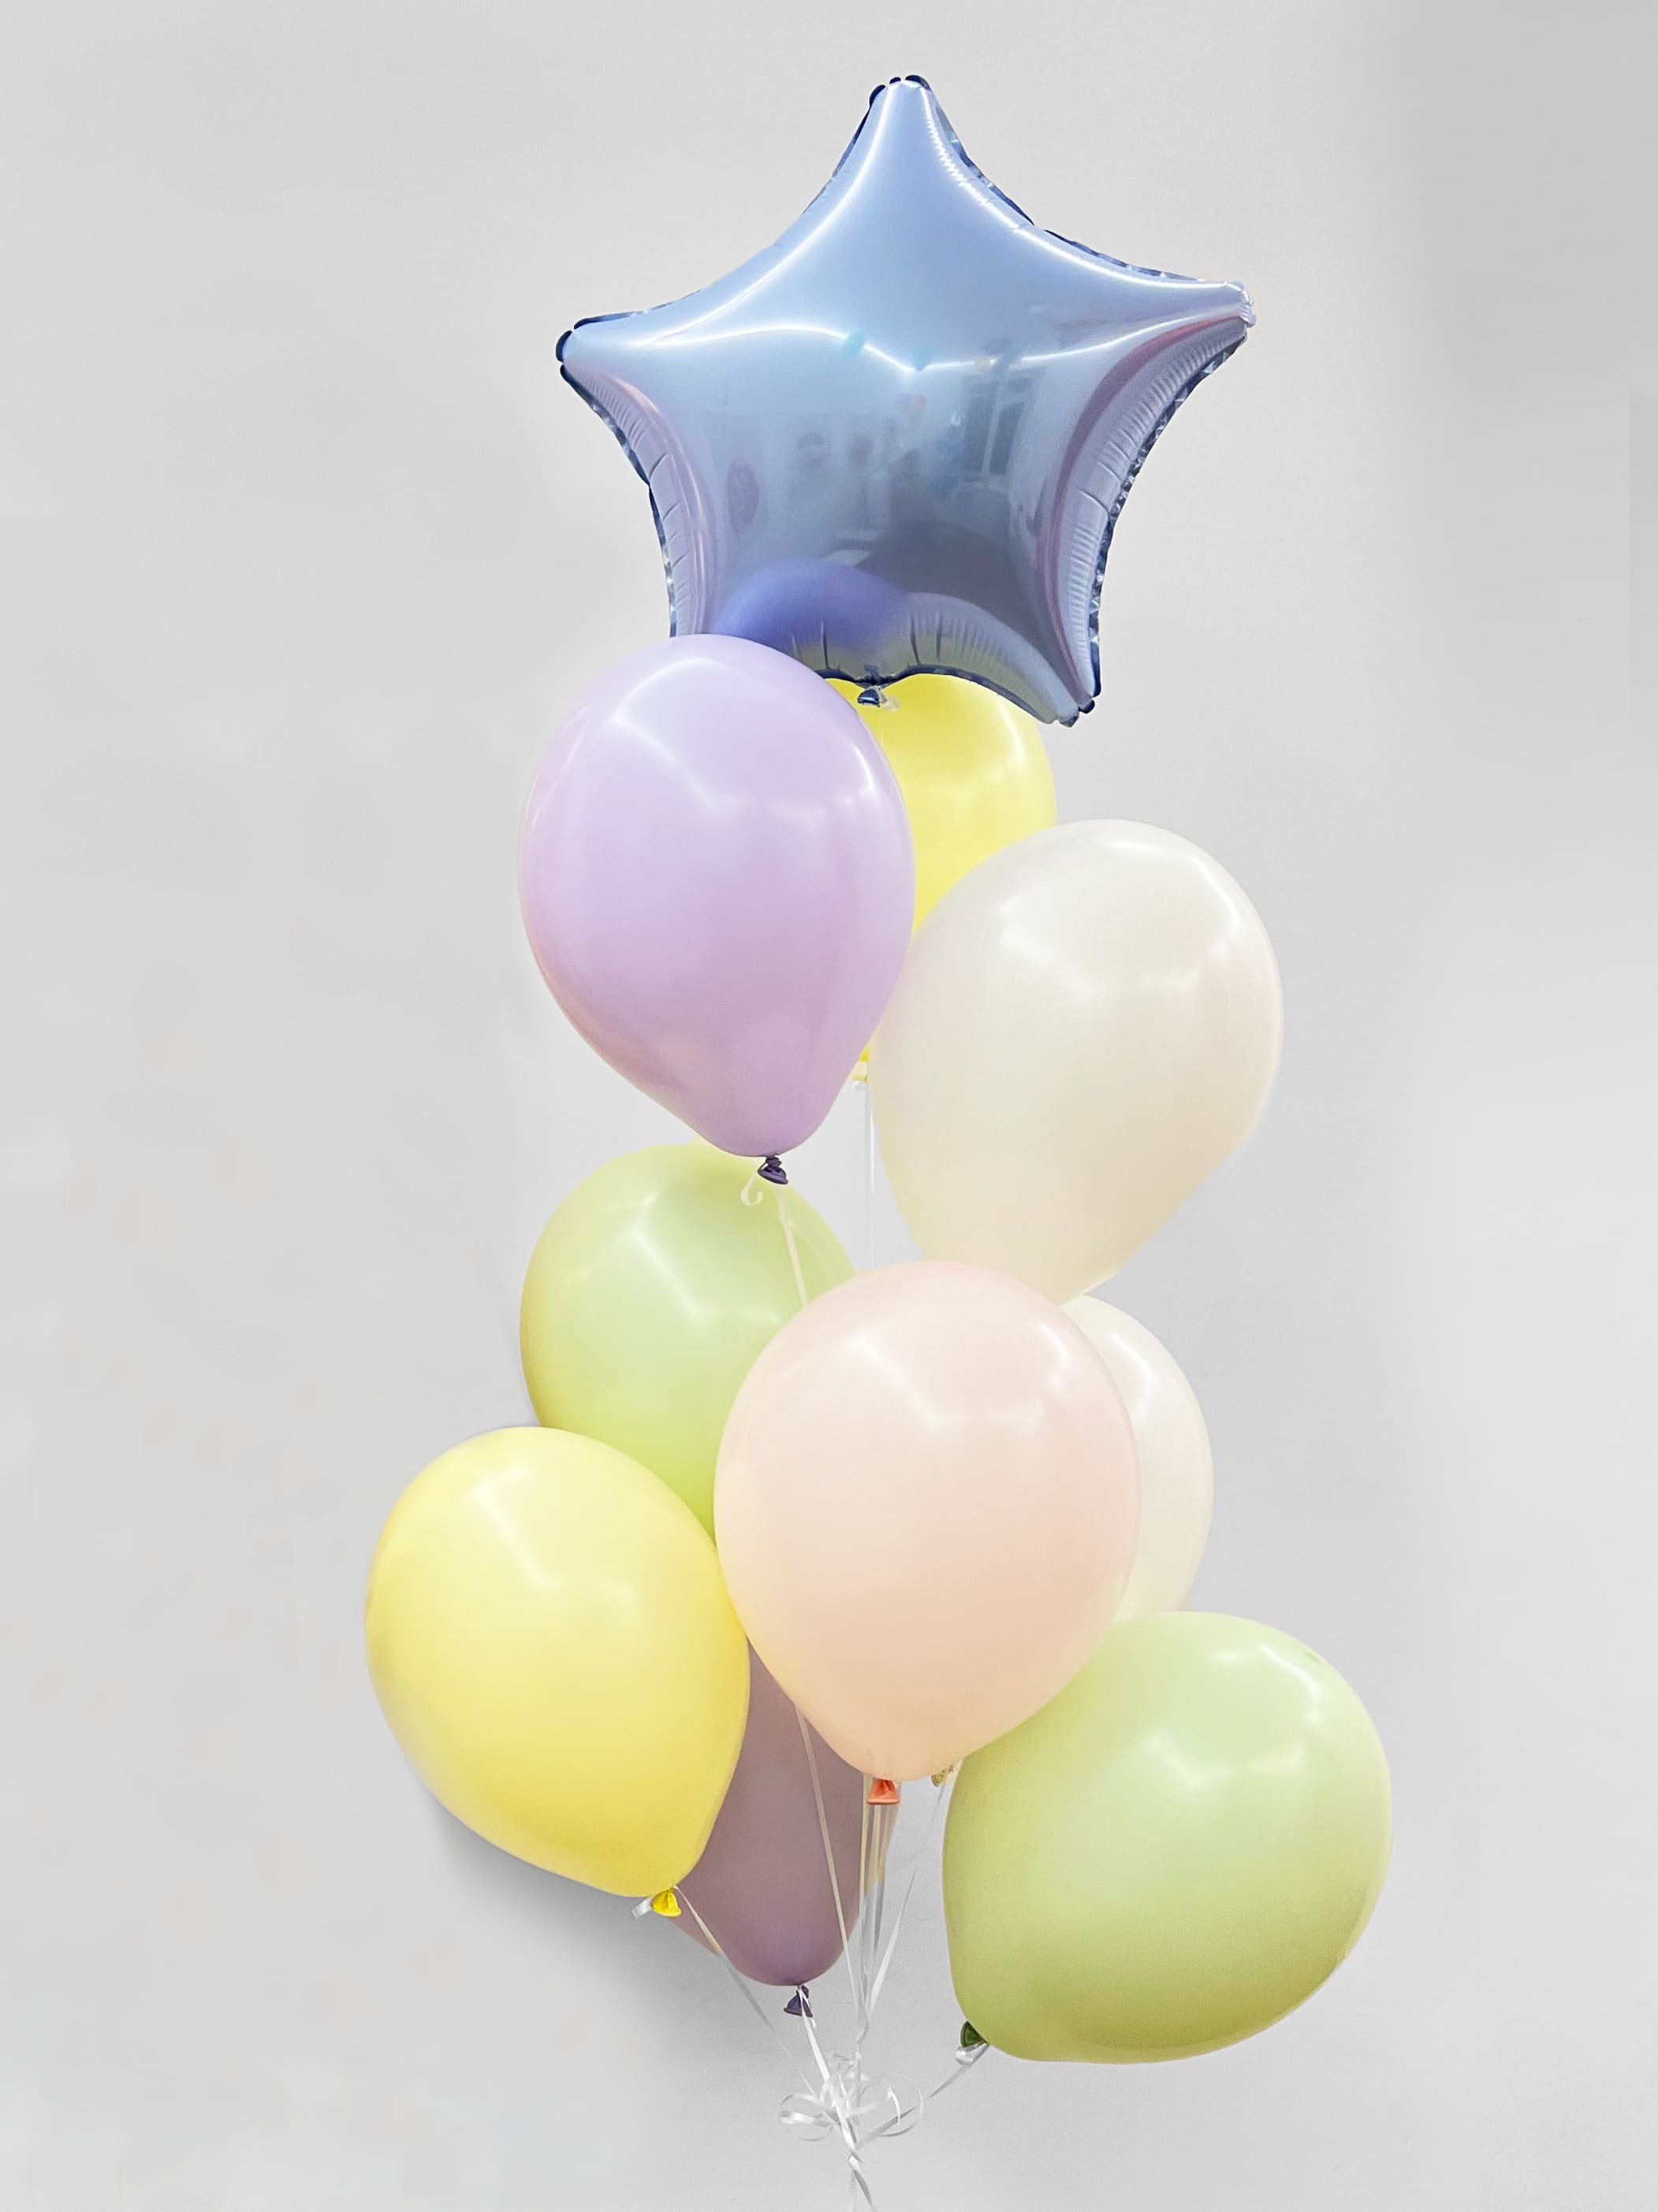 фонтан из воздушных шаров свадьба Фонтан из шаров «Пастель» - 10 шаров + шар Bubbles (сфера) - серебряные конфетти